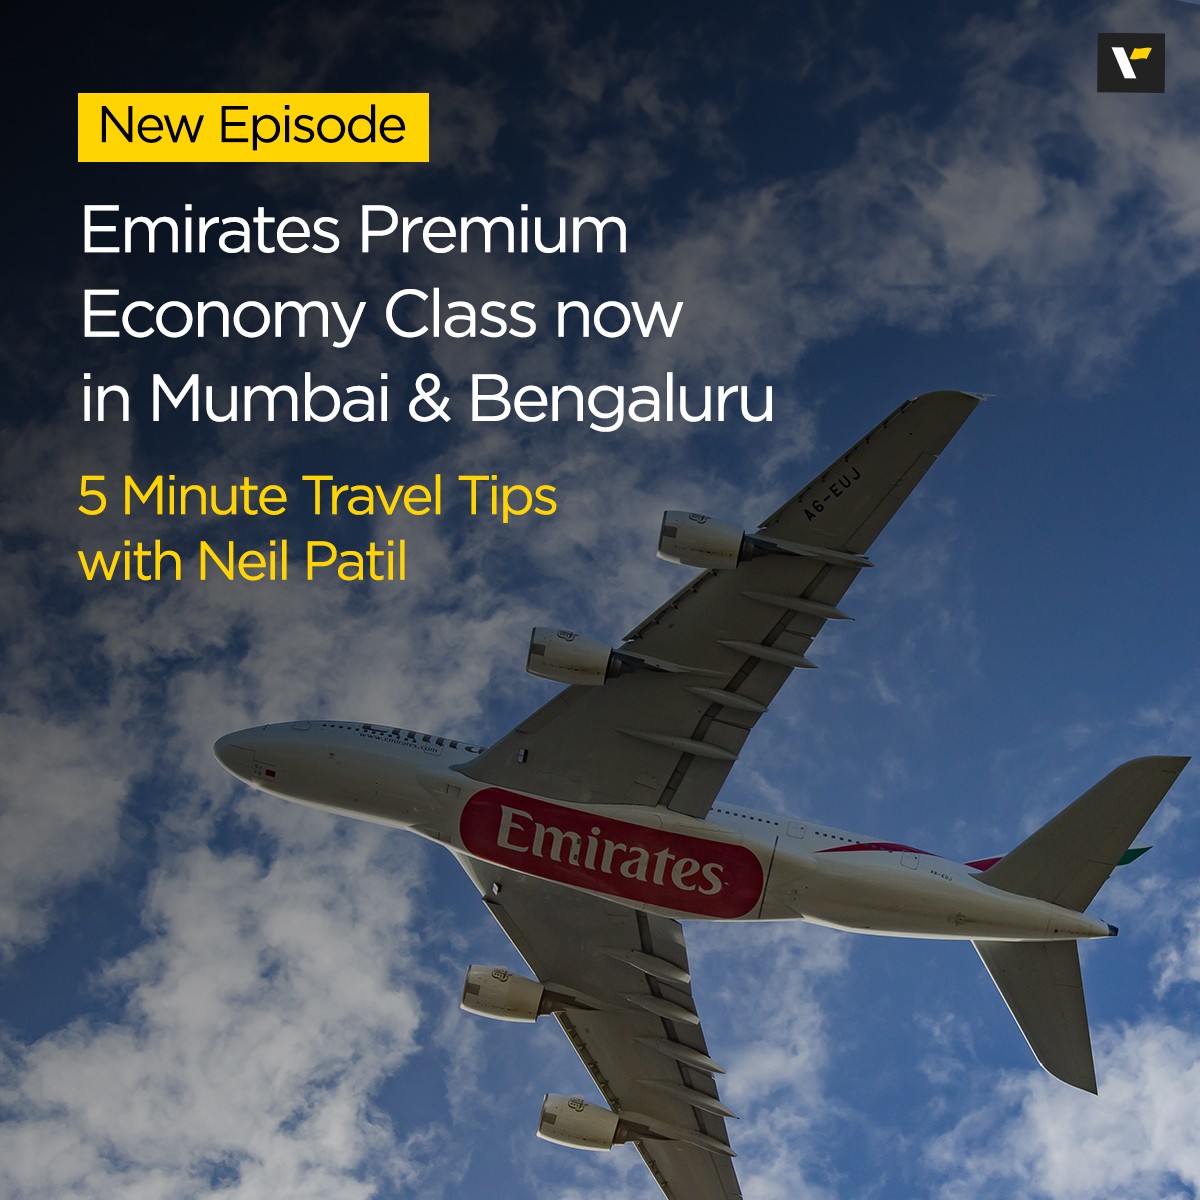 Emirates Premium Economy Class now in Mumbai & Bengaluru